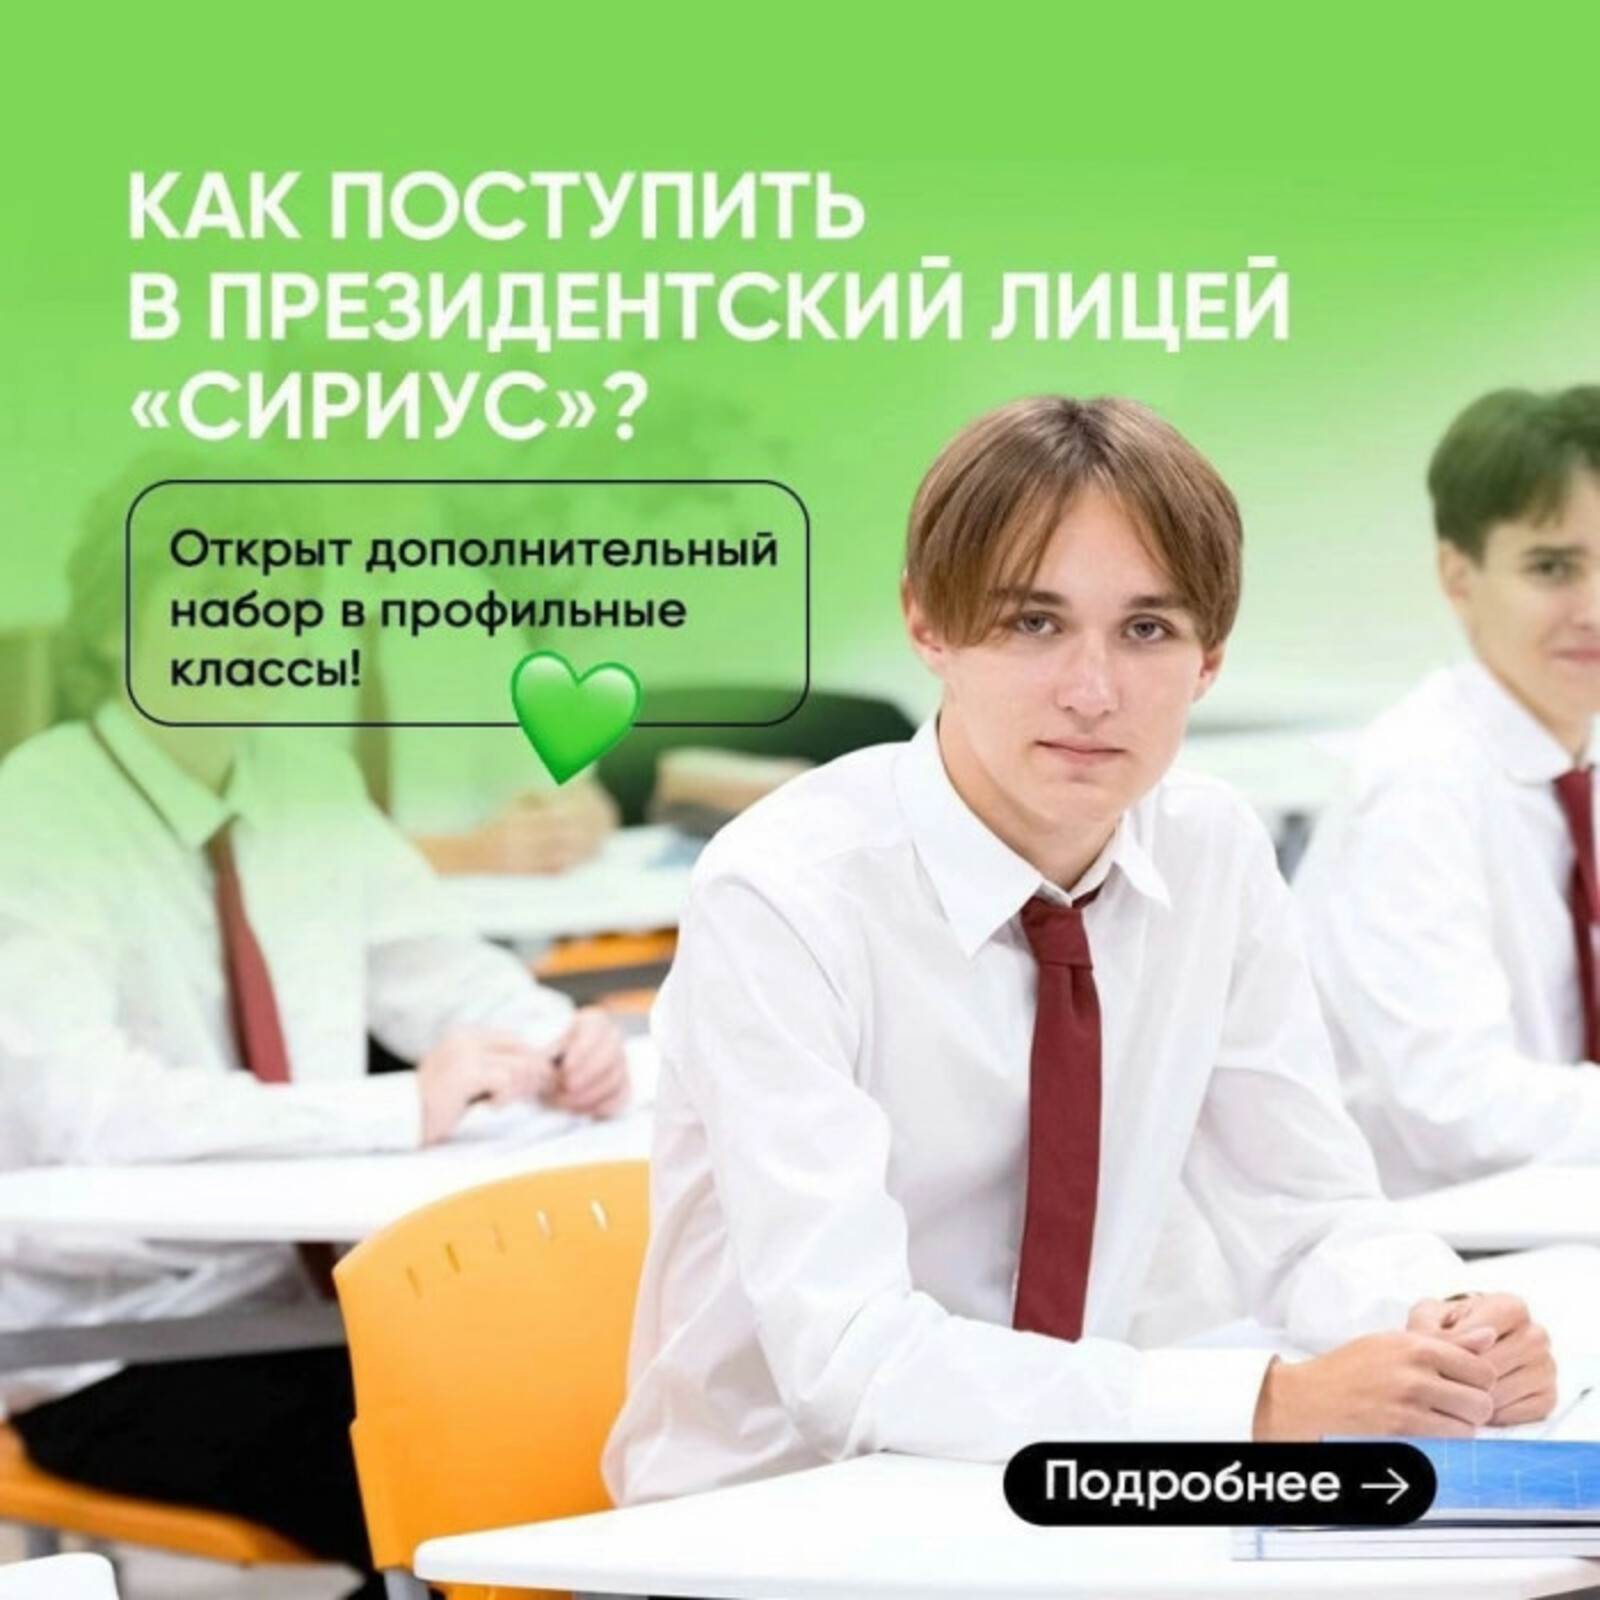 Школьники из Башкортостана смогут учиться в профильных классах Президентского Лицея «Сириус»